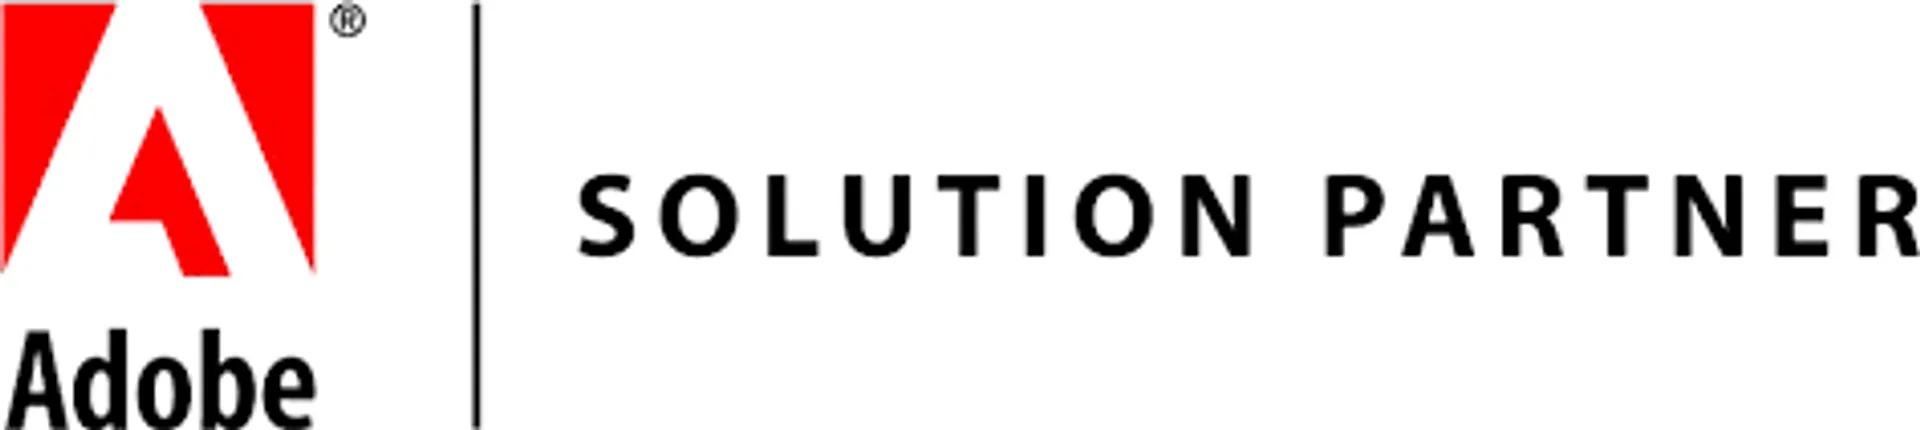 Adobe Solutions Partner